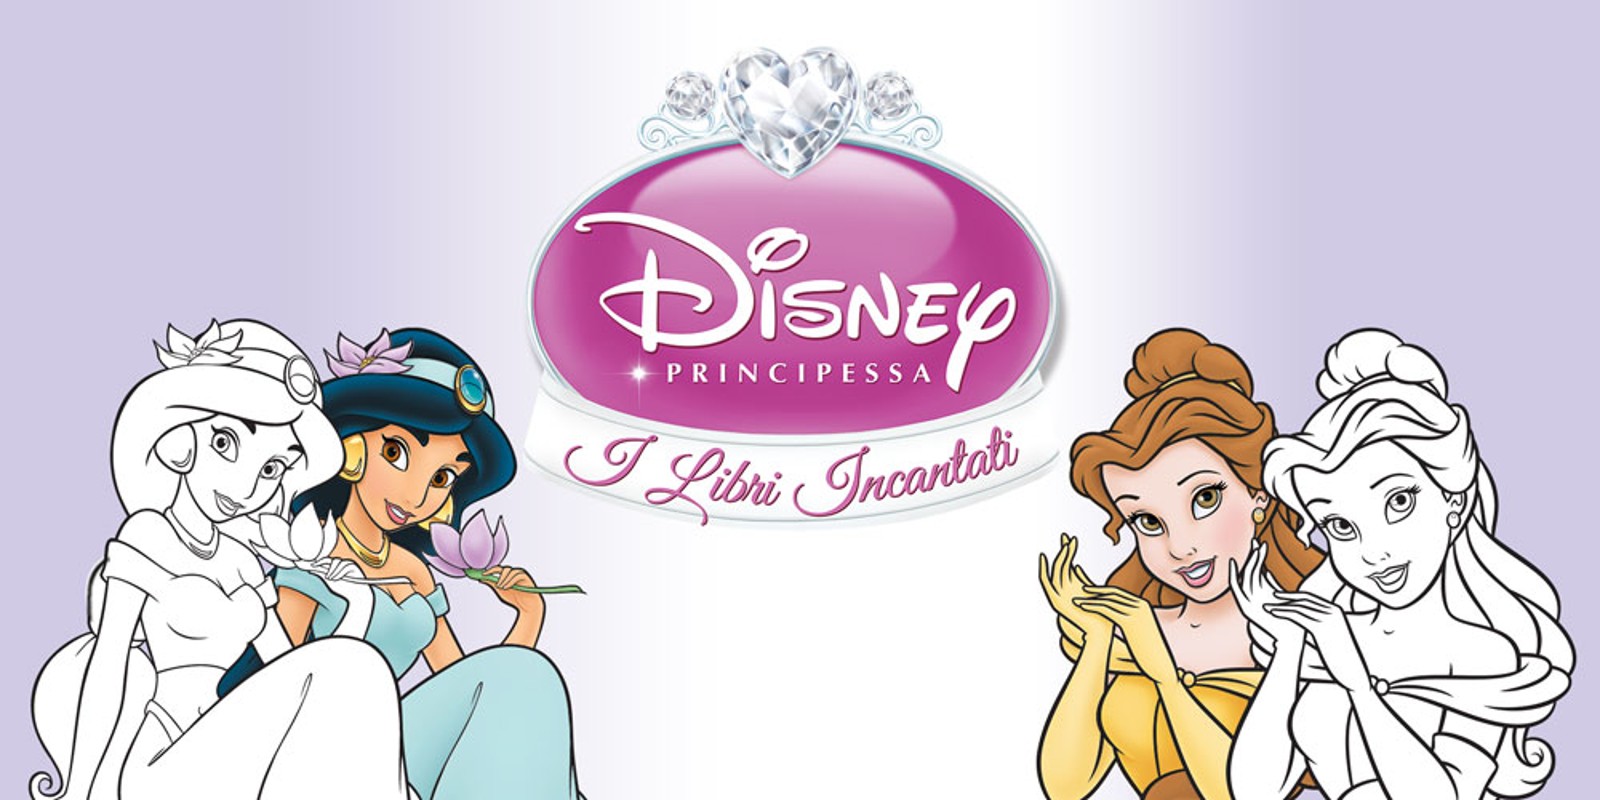 Disney Principessa: I Libri Incantati